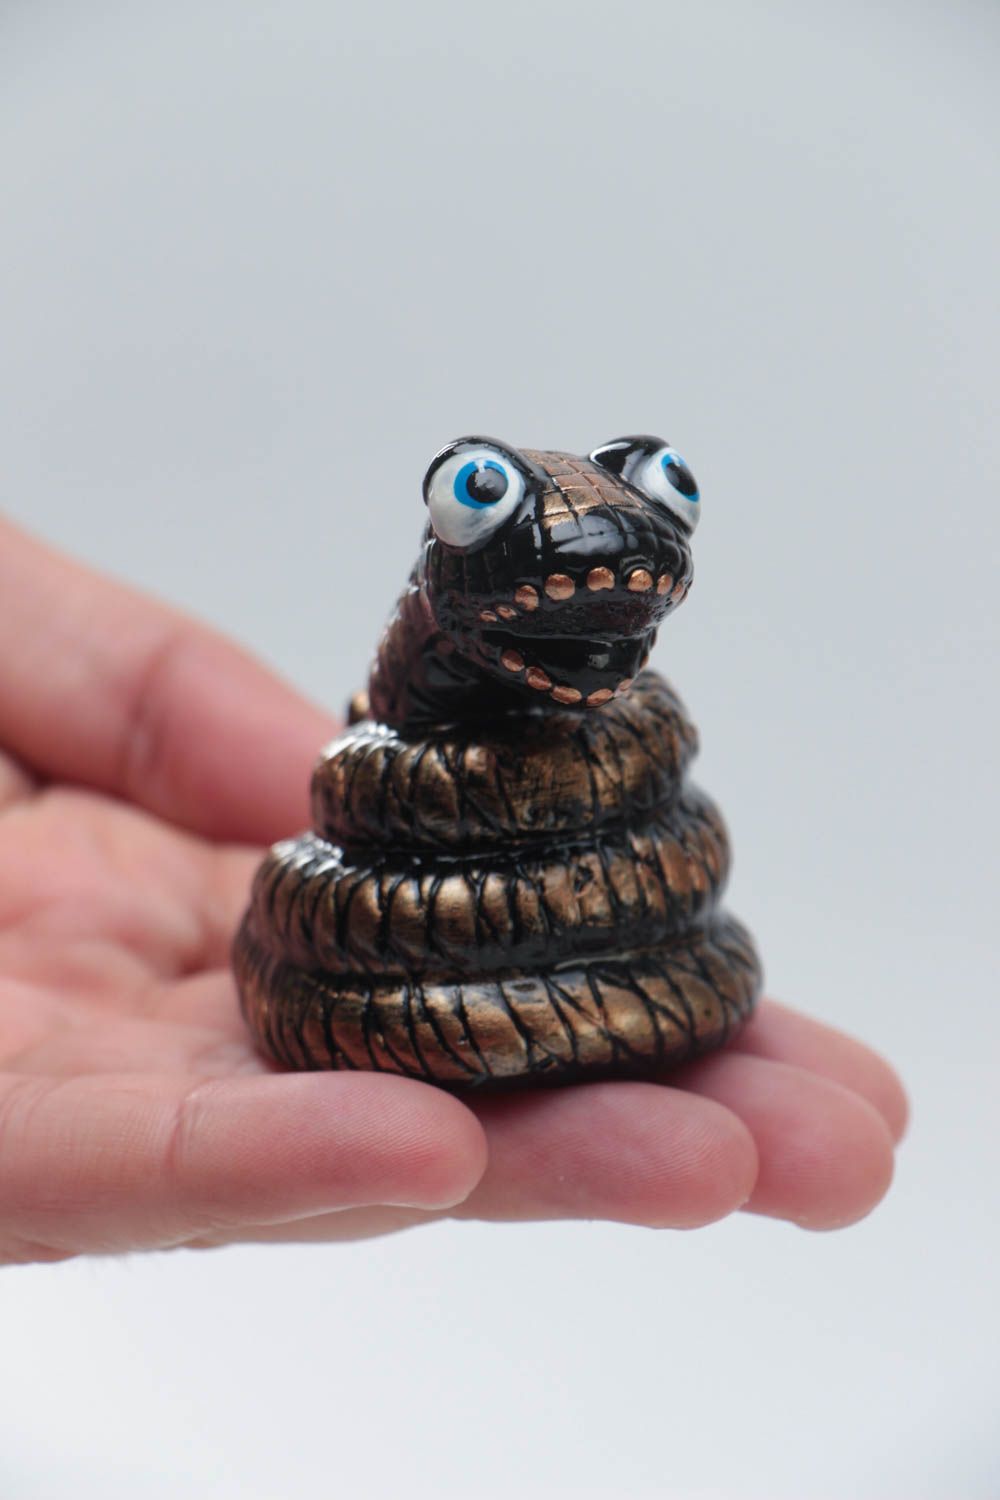 Темная статуэтка змеи из гипса ручной работы оригинальная красивая расписная фото 5